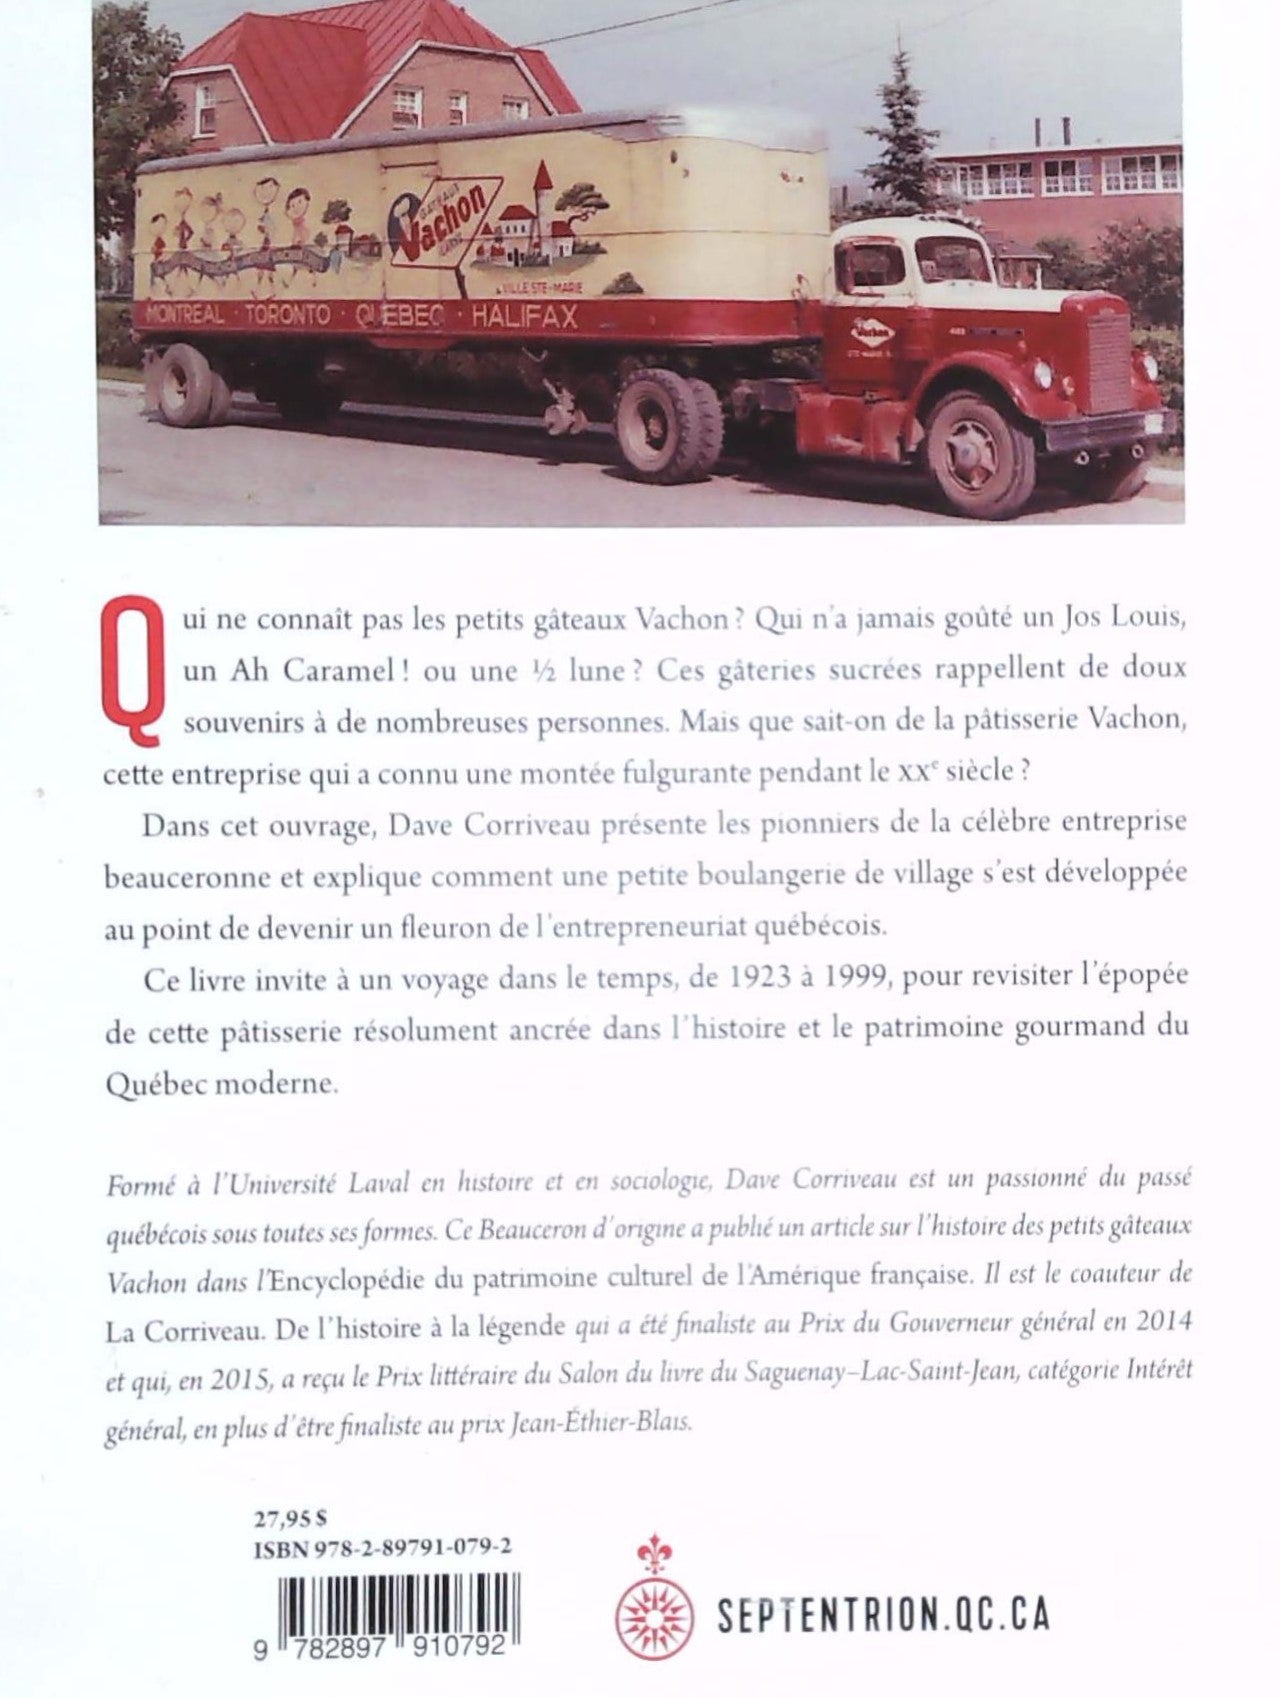 L'histoire des P'tits Gâteaux Vachon (1923-1999) : De sucre et d'audace (Dave Corriveau)